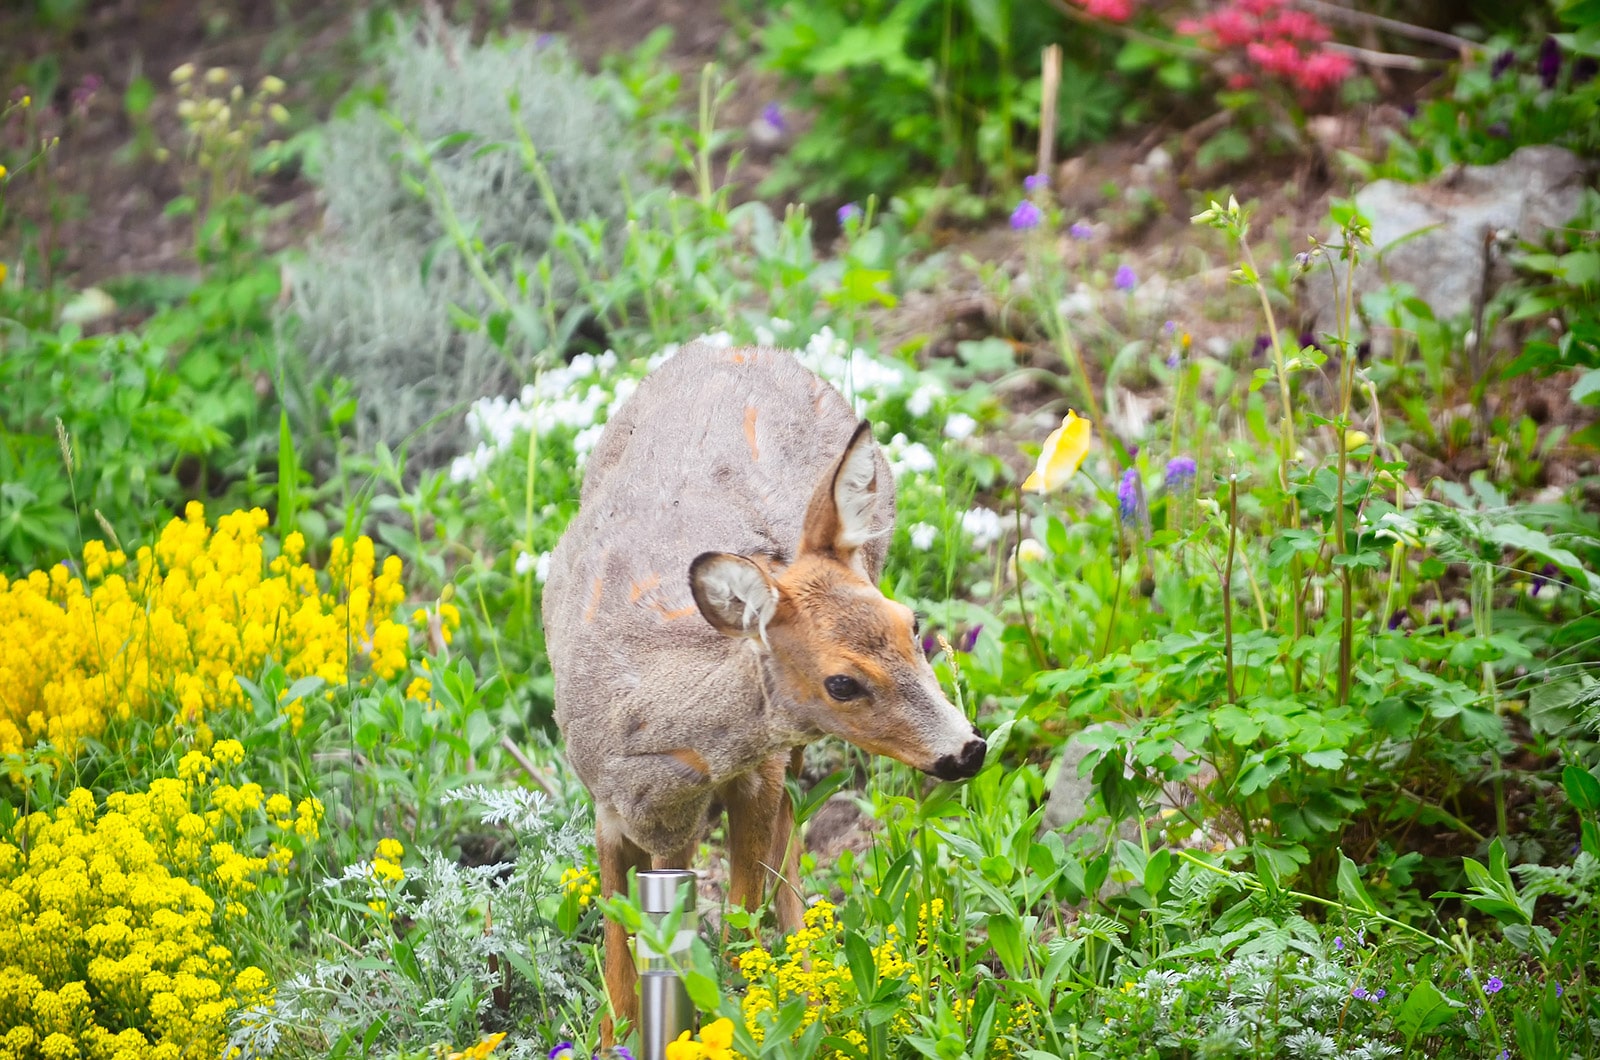 Young deer standing in a flower garden